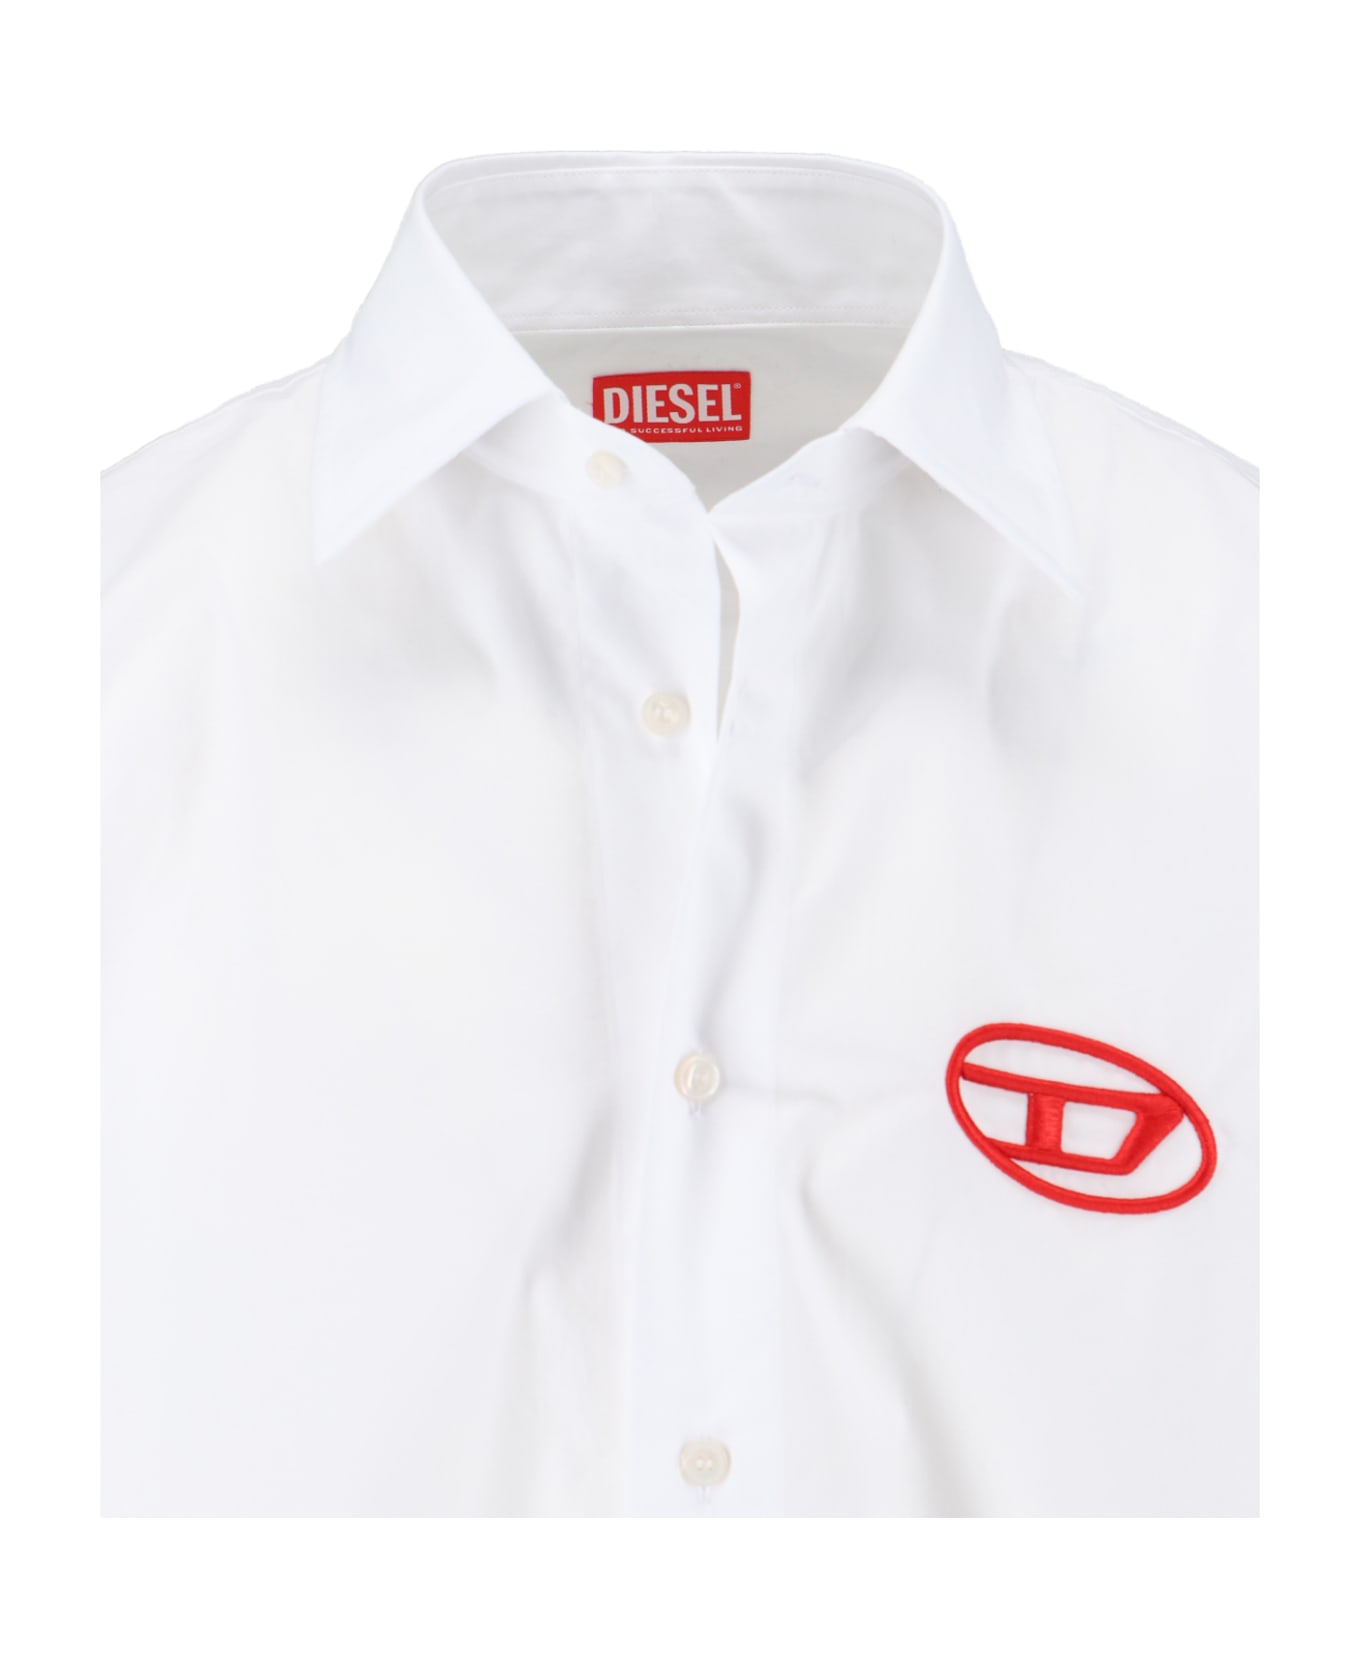 Diesel 'oval-d' Logo Shirt - White シャツ